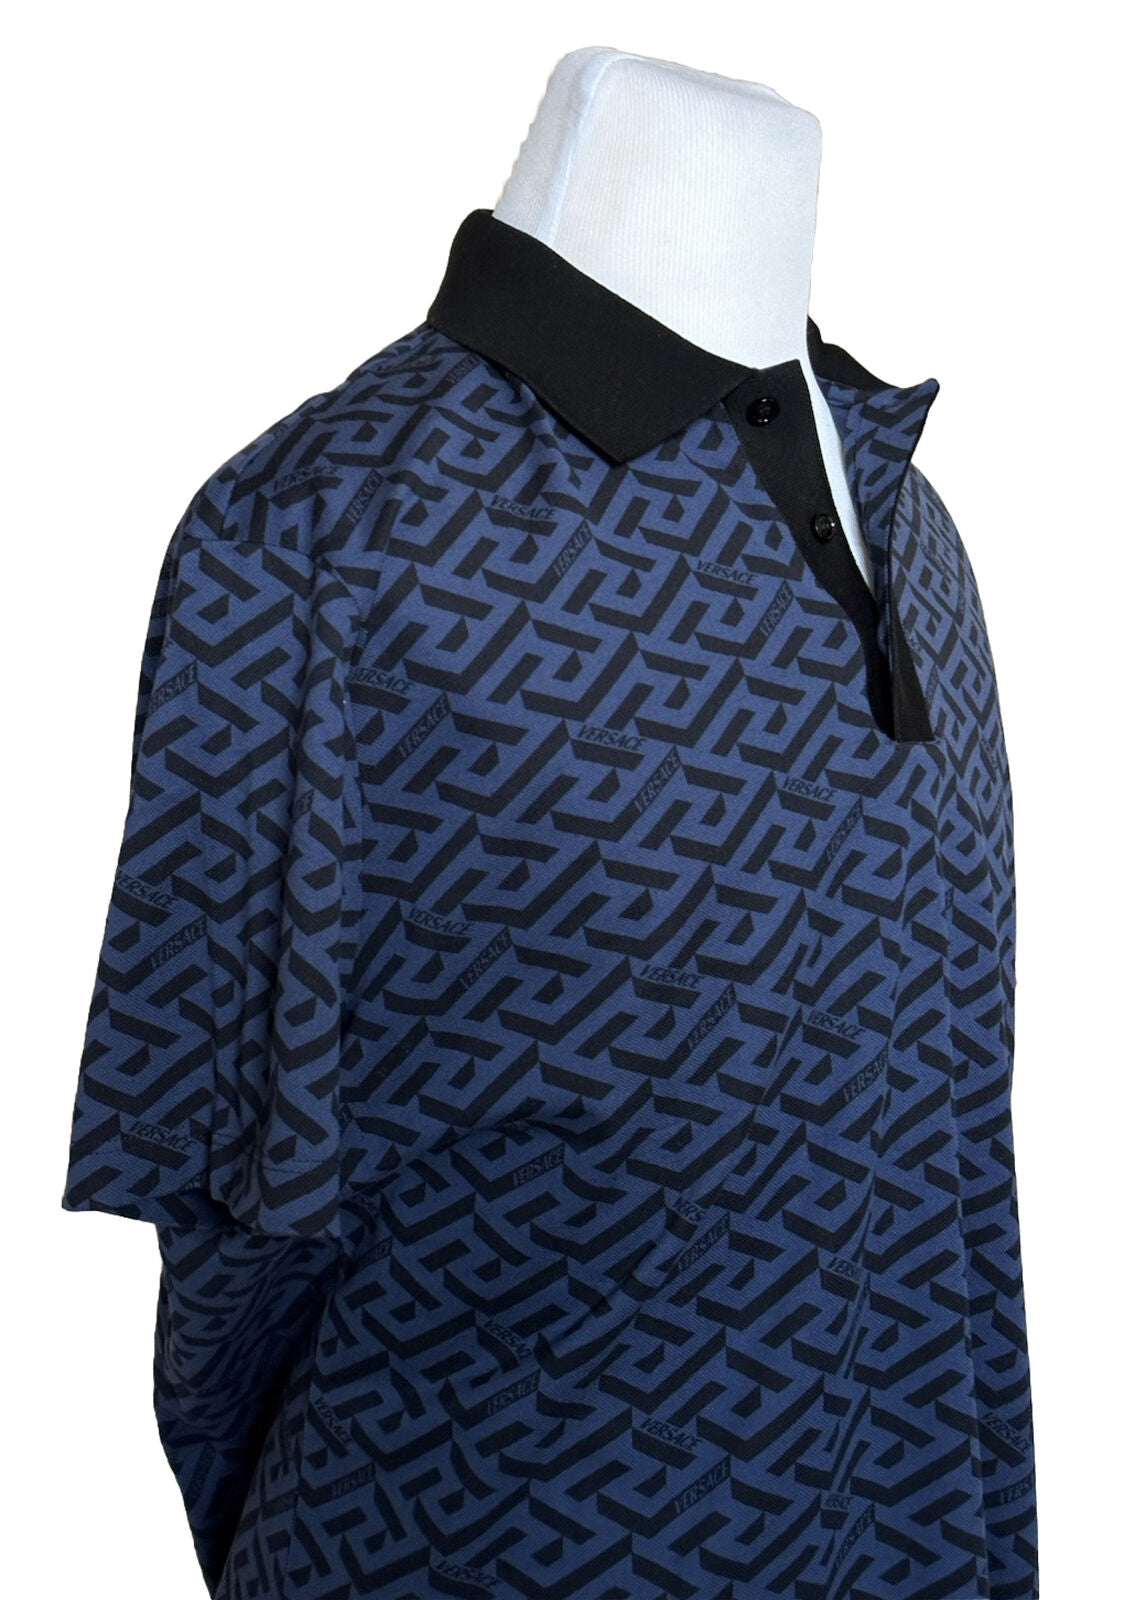 NWT $775 Versace Piquet Greca Signature Синяя/Черная рубашка-поло 2XL 1004083 Италия